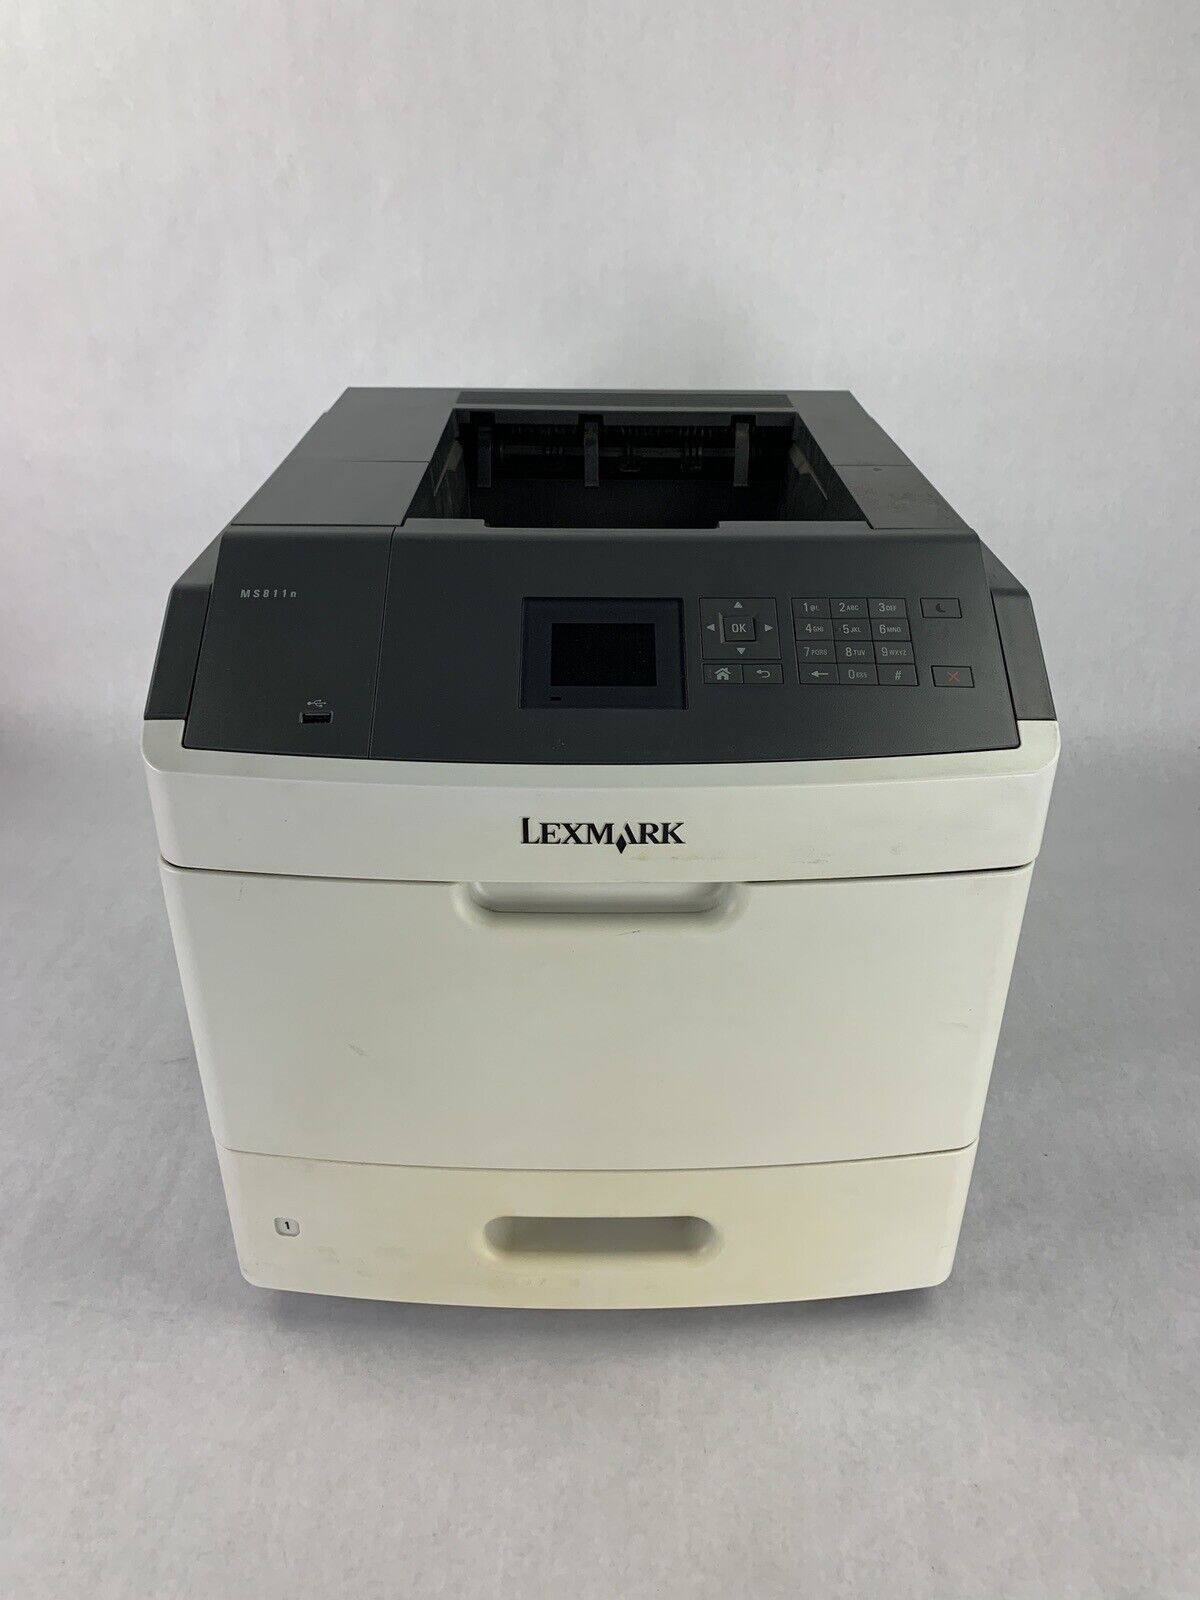 Lexmark MS811N Laser Printer 40G0200 Tested Missing Imaging Unit/Fuser